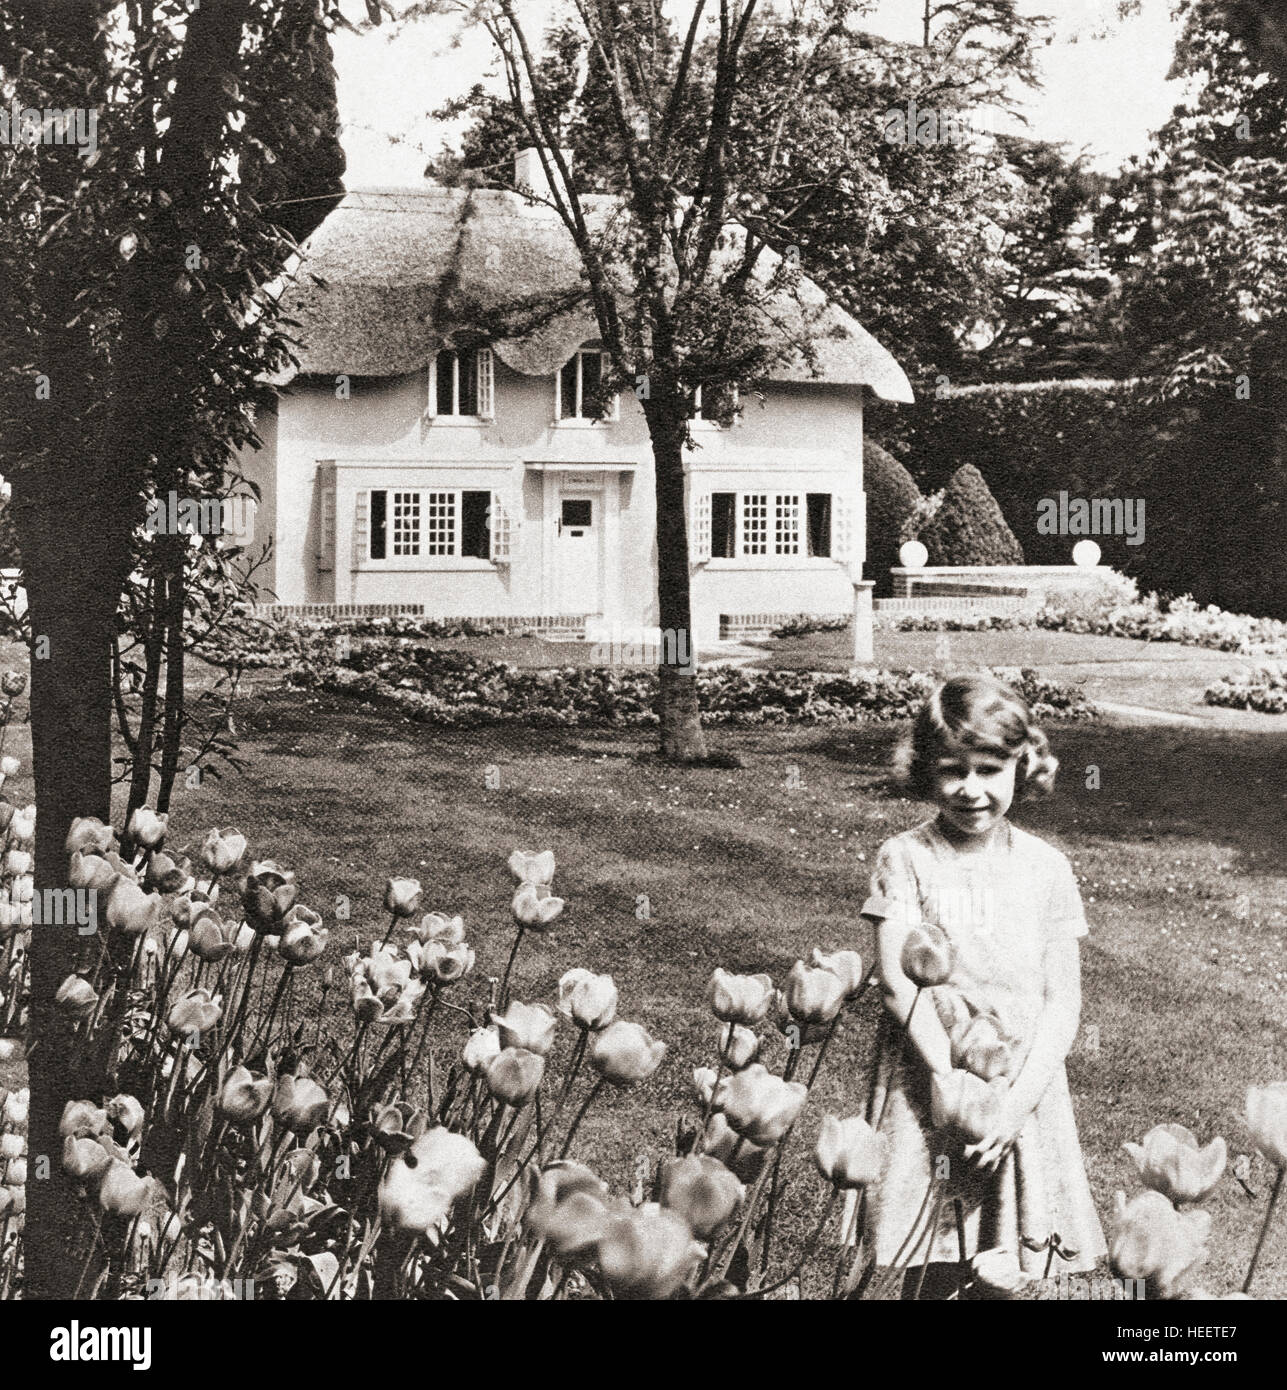 Prinzessin Elizabeth im Y Bwthyn Bach oder dem kleinen Haus, gelegen im Garten der Royal Lodge, Windsor Great Park, Berkshire, England. Dieses Miniaturhaus war ein Geschenk der Einwohner von Wales an sie. Prinzessin Elizabeth, zukünftige Königin Elizabeth II., hier im Alter von neun Jahren gesehen. Elizabeth II, 1926 - 2022. Königin des Vereinigten Königreichs, Kanada, Australien und Neuseeland. Stockfoto